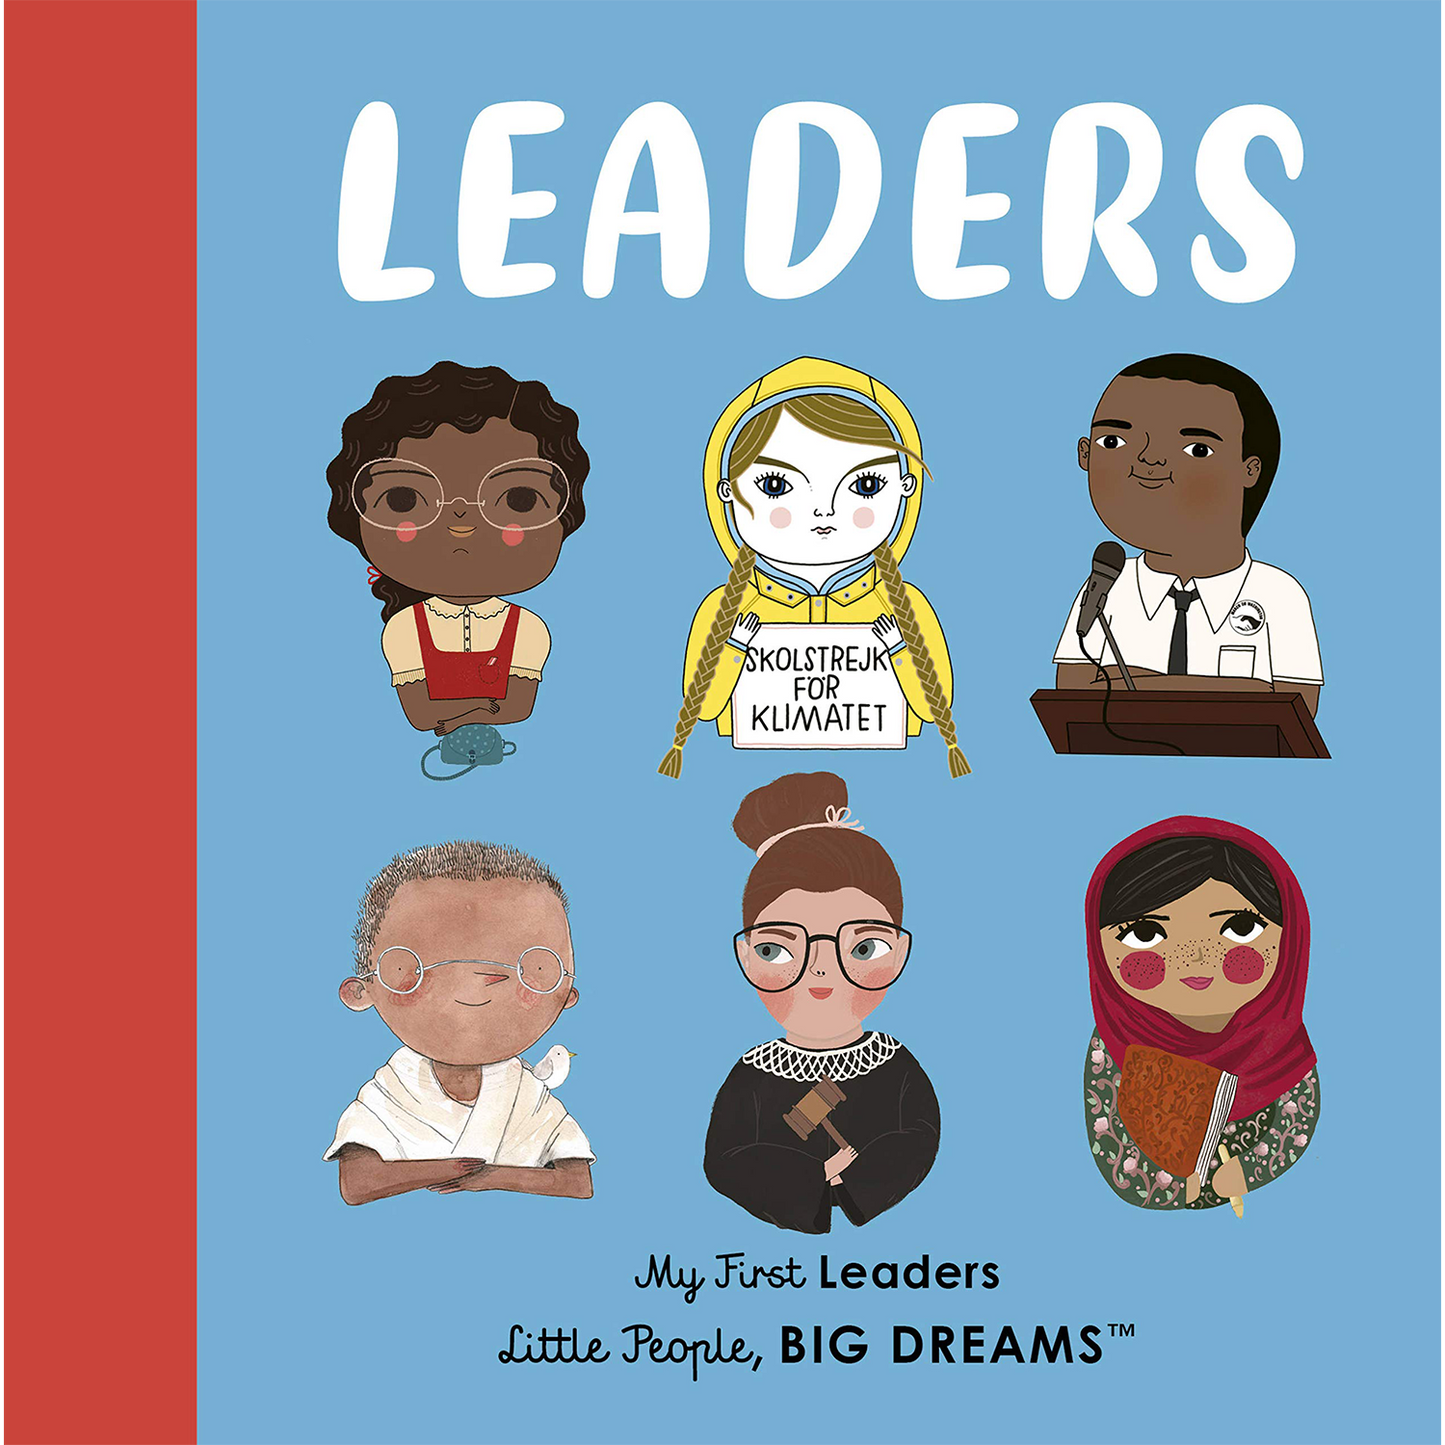 Leaders: My First Leaders, Little People, Big Dreams